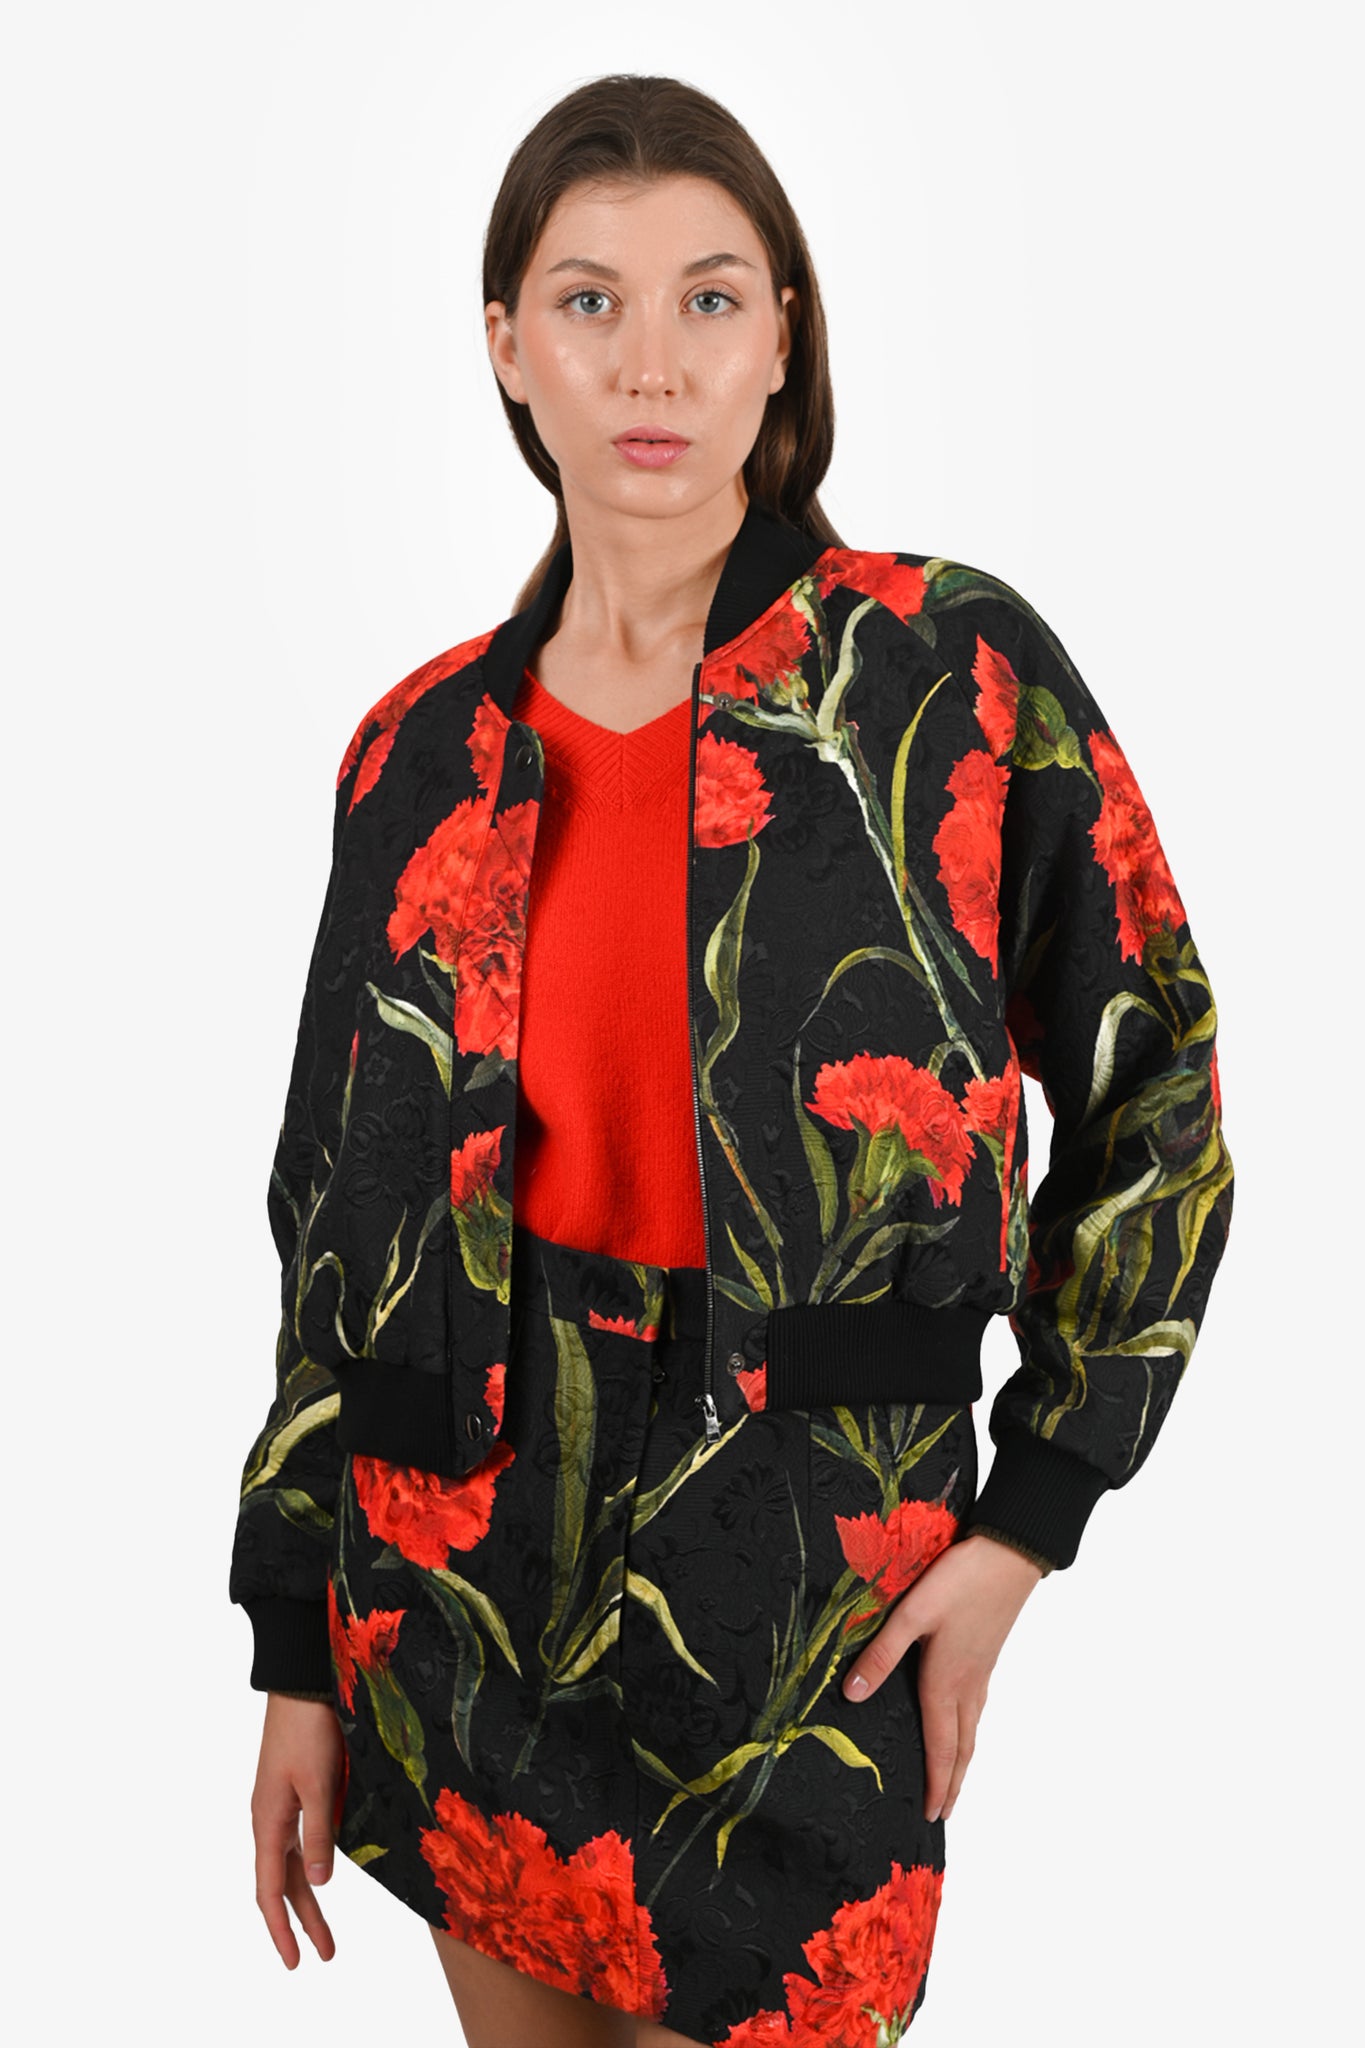 Dolce & Gabbana Black/Red Floral Print Bomber Jacket Size 42